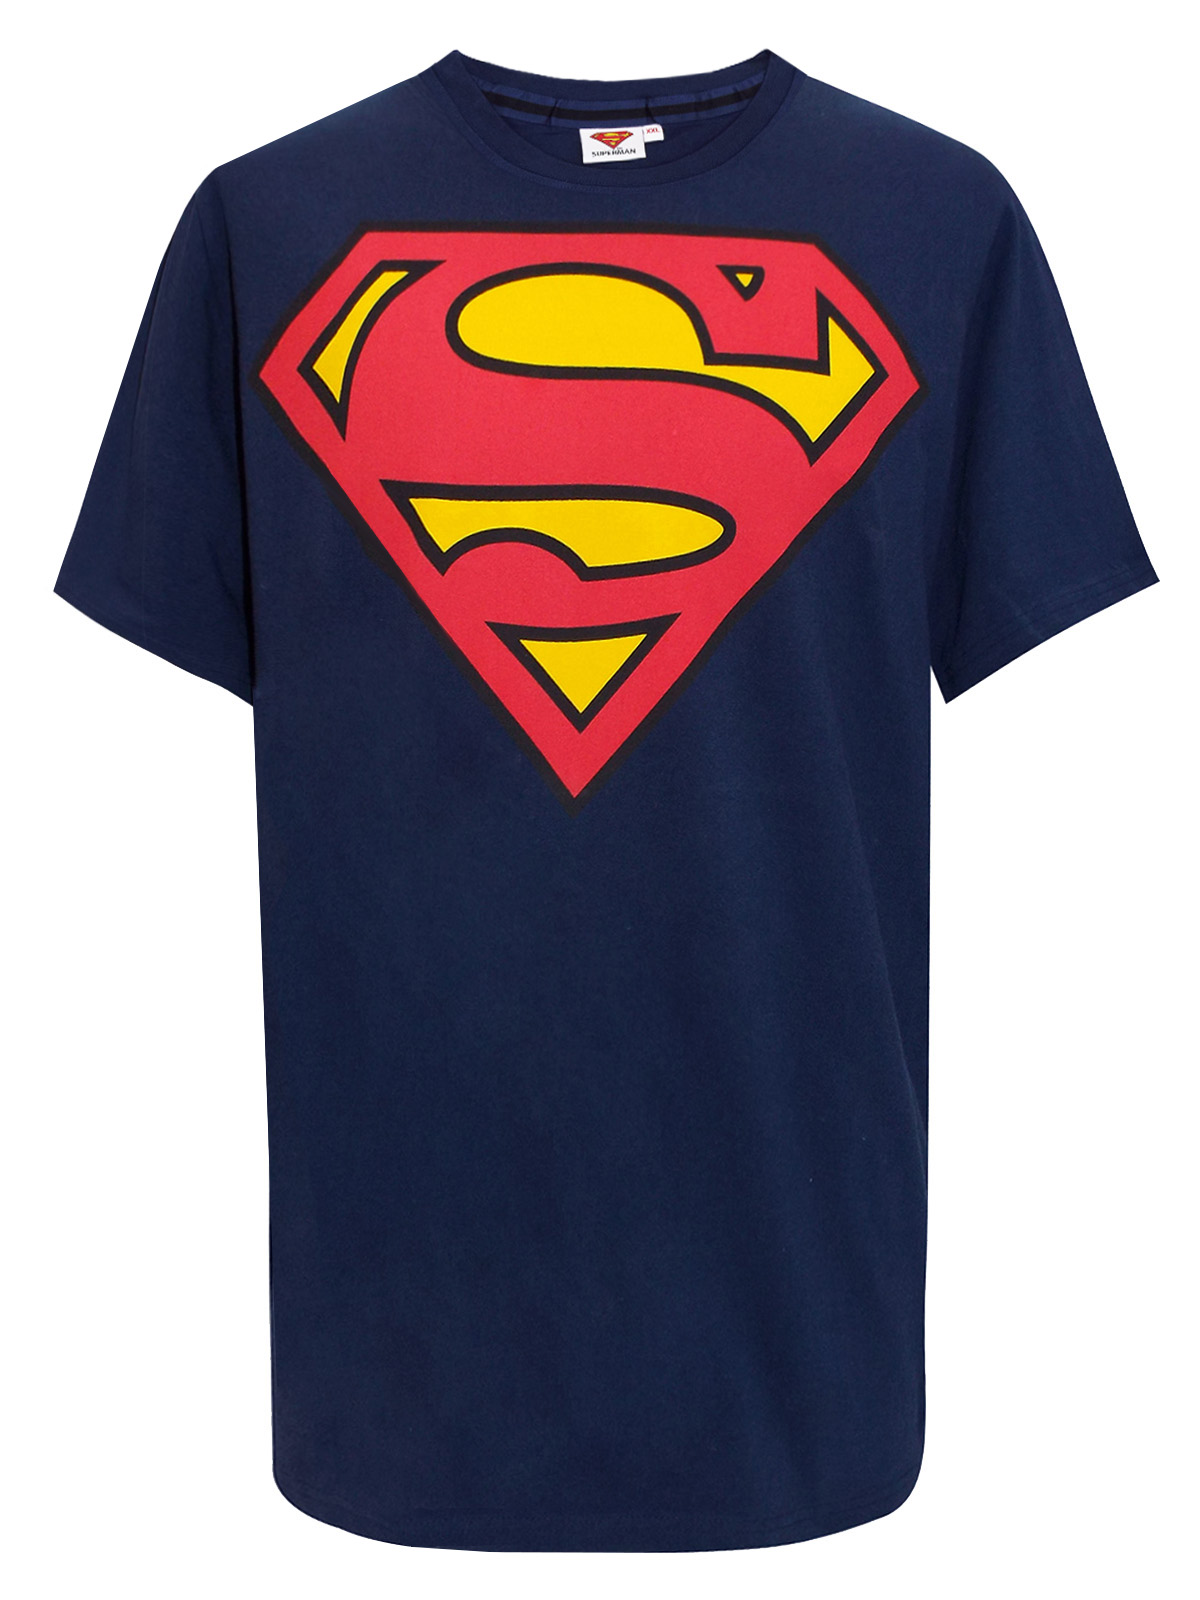 DC Comics - - NAVY Mens Cotton Rich Superman T-Shirt - Plus Size 2XL to 4XL